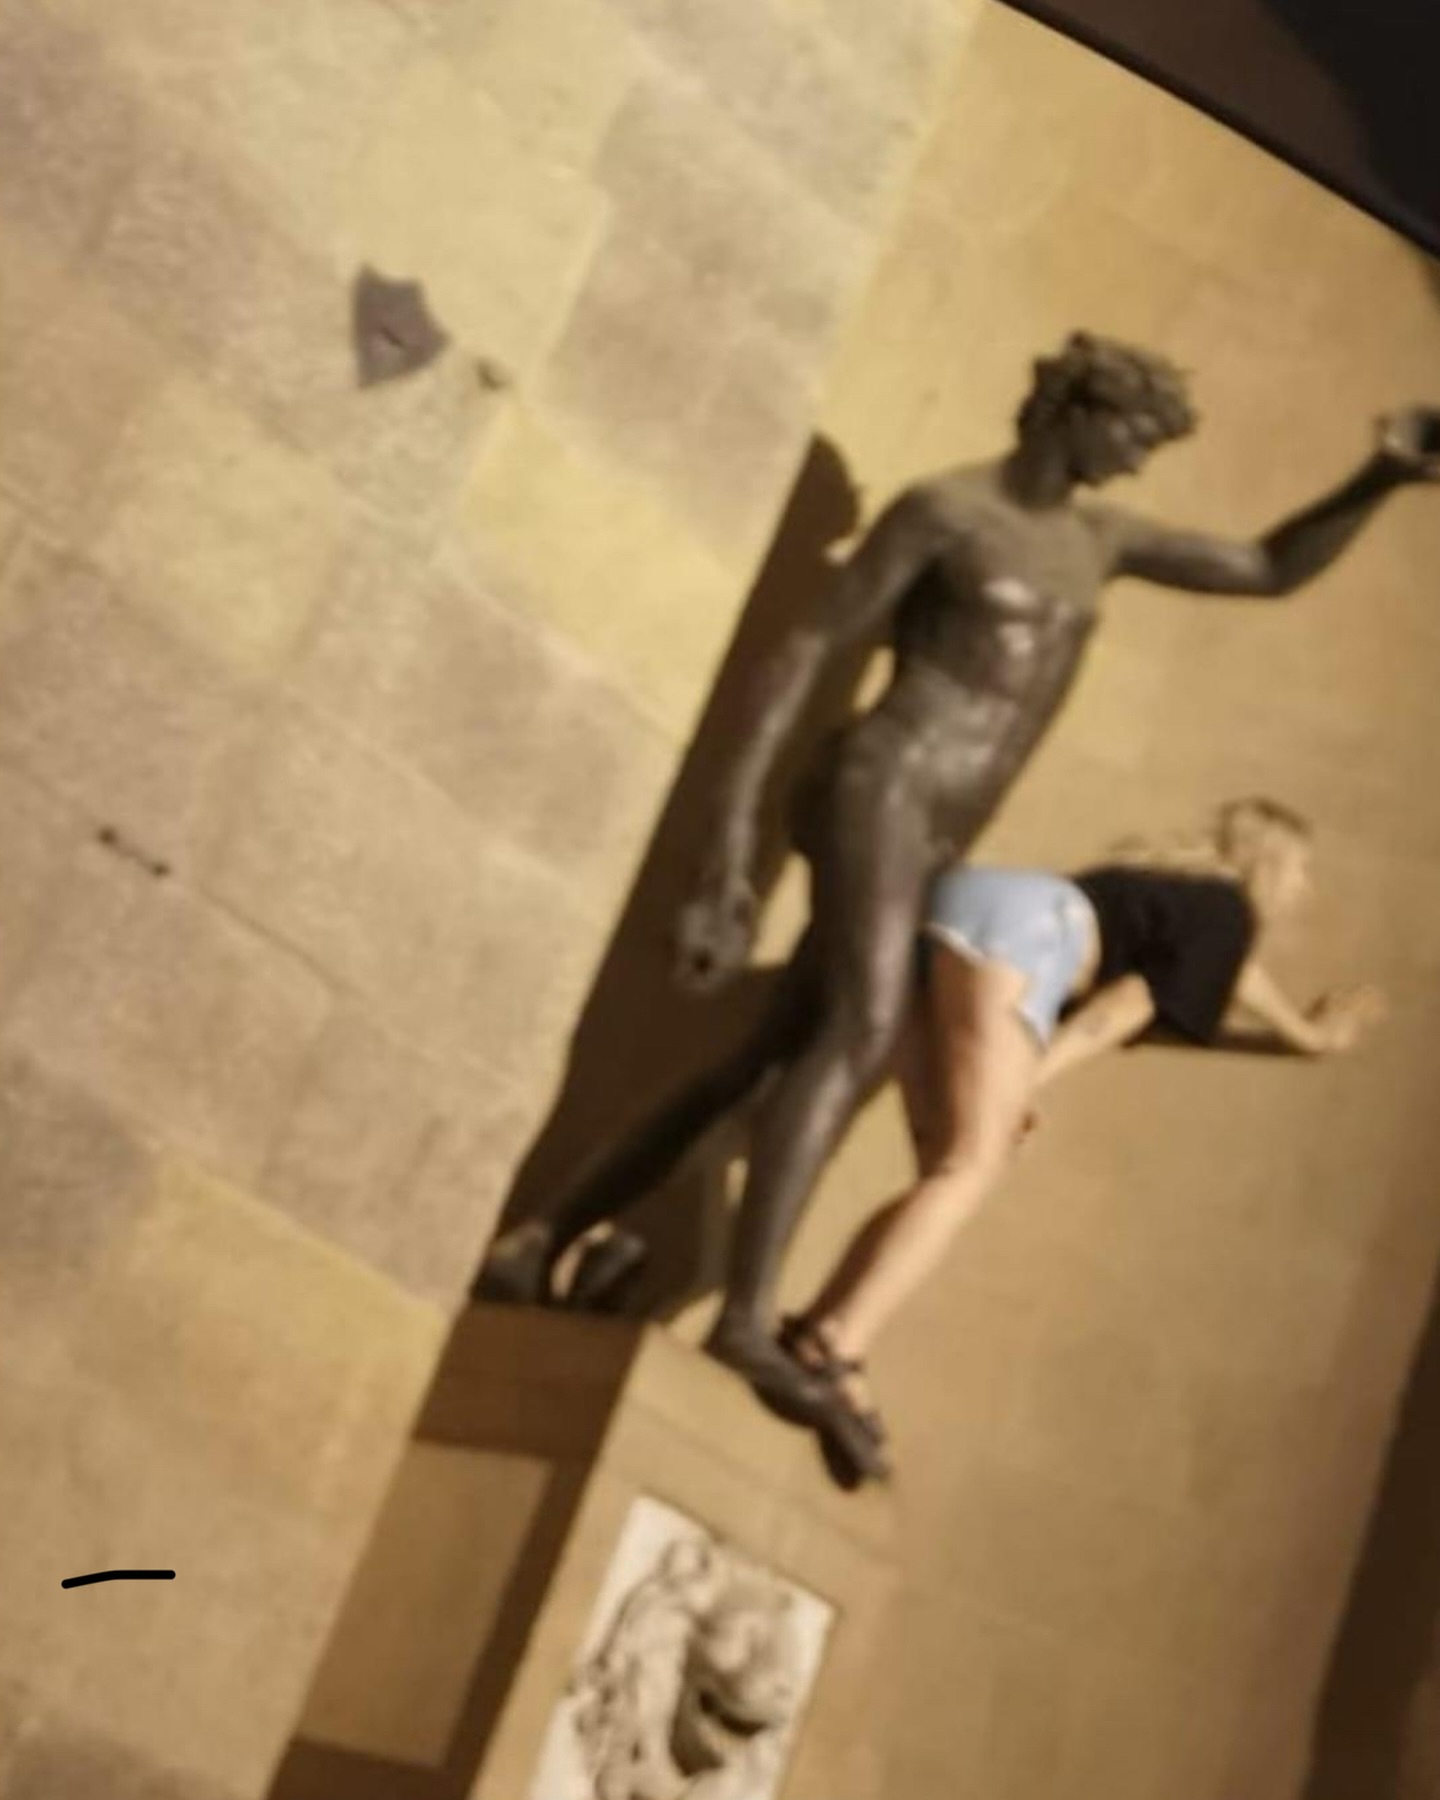 Una turista fue fotografiada imitando actos sexuales en una famosa estatua de Florencia